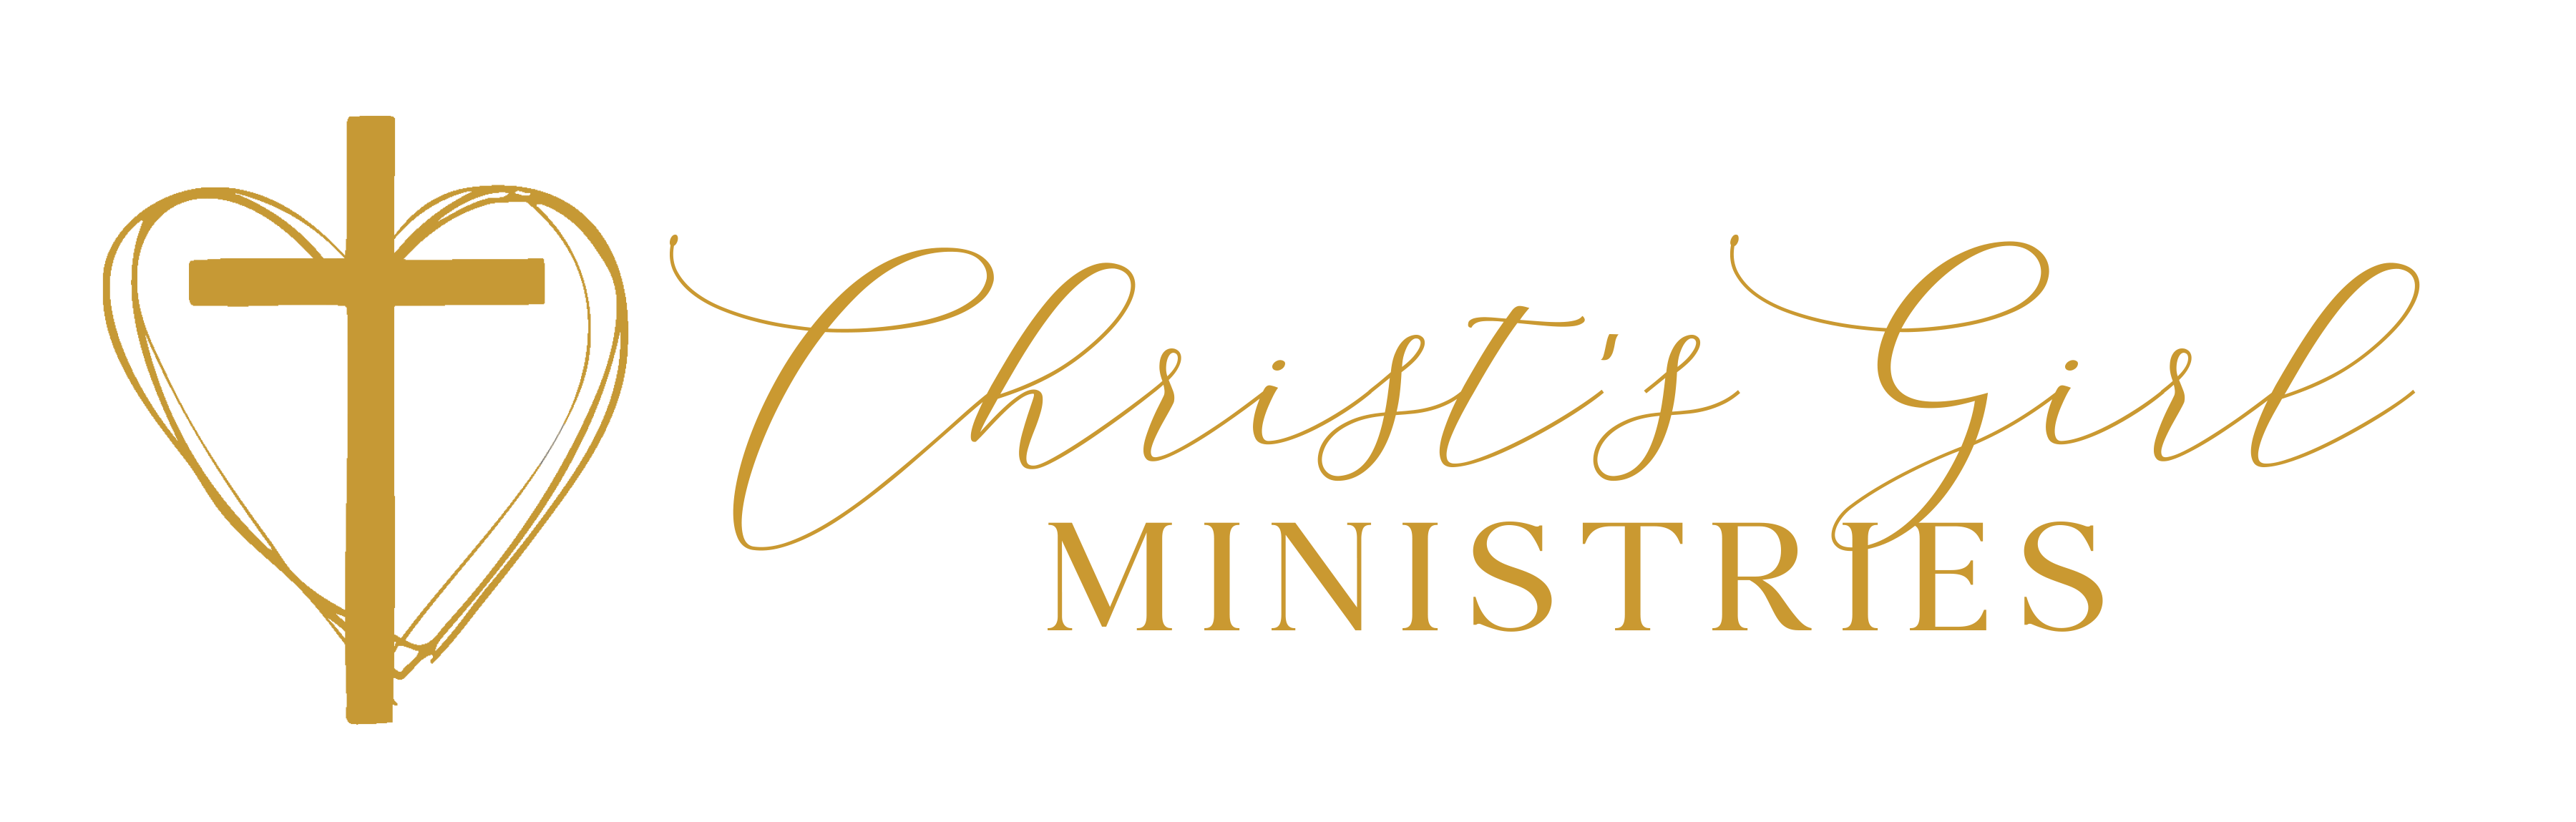 christ-s-girl-journey-christ-s-girl-ministries